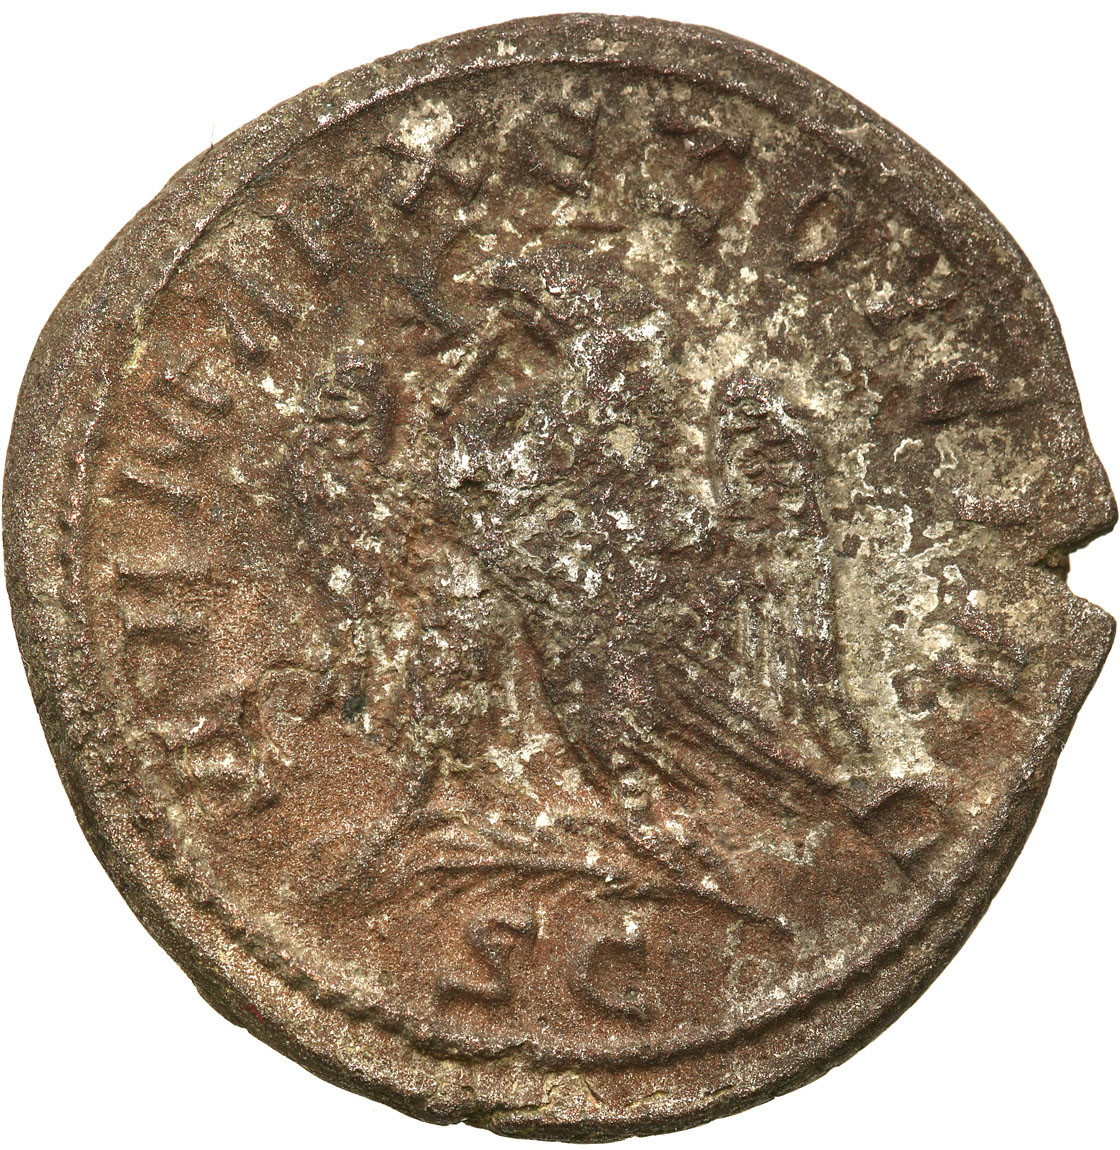 Prowincje Rzymskie, Syria, Antiochia, Tetradrachma, Trajan Decjusz 249 - 251 r. n. e.